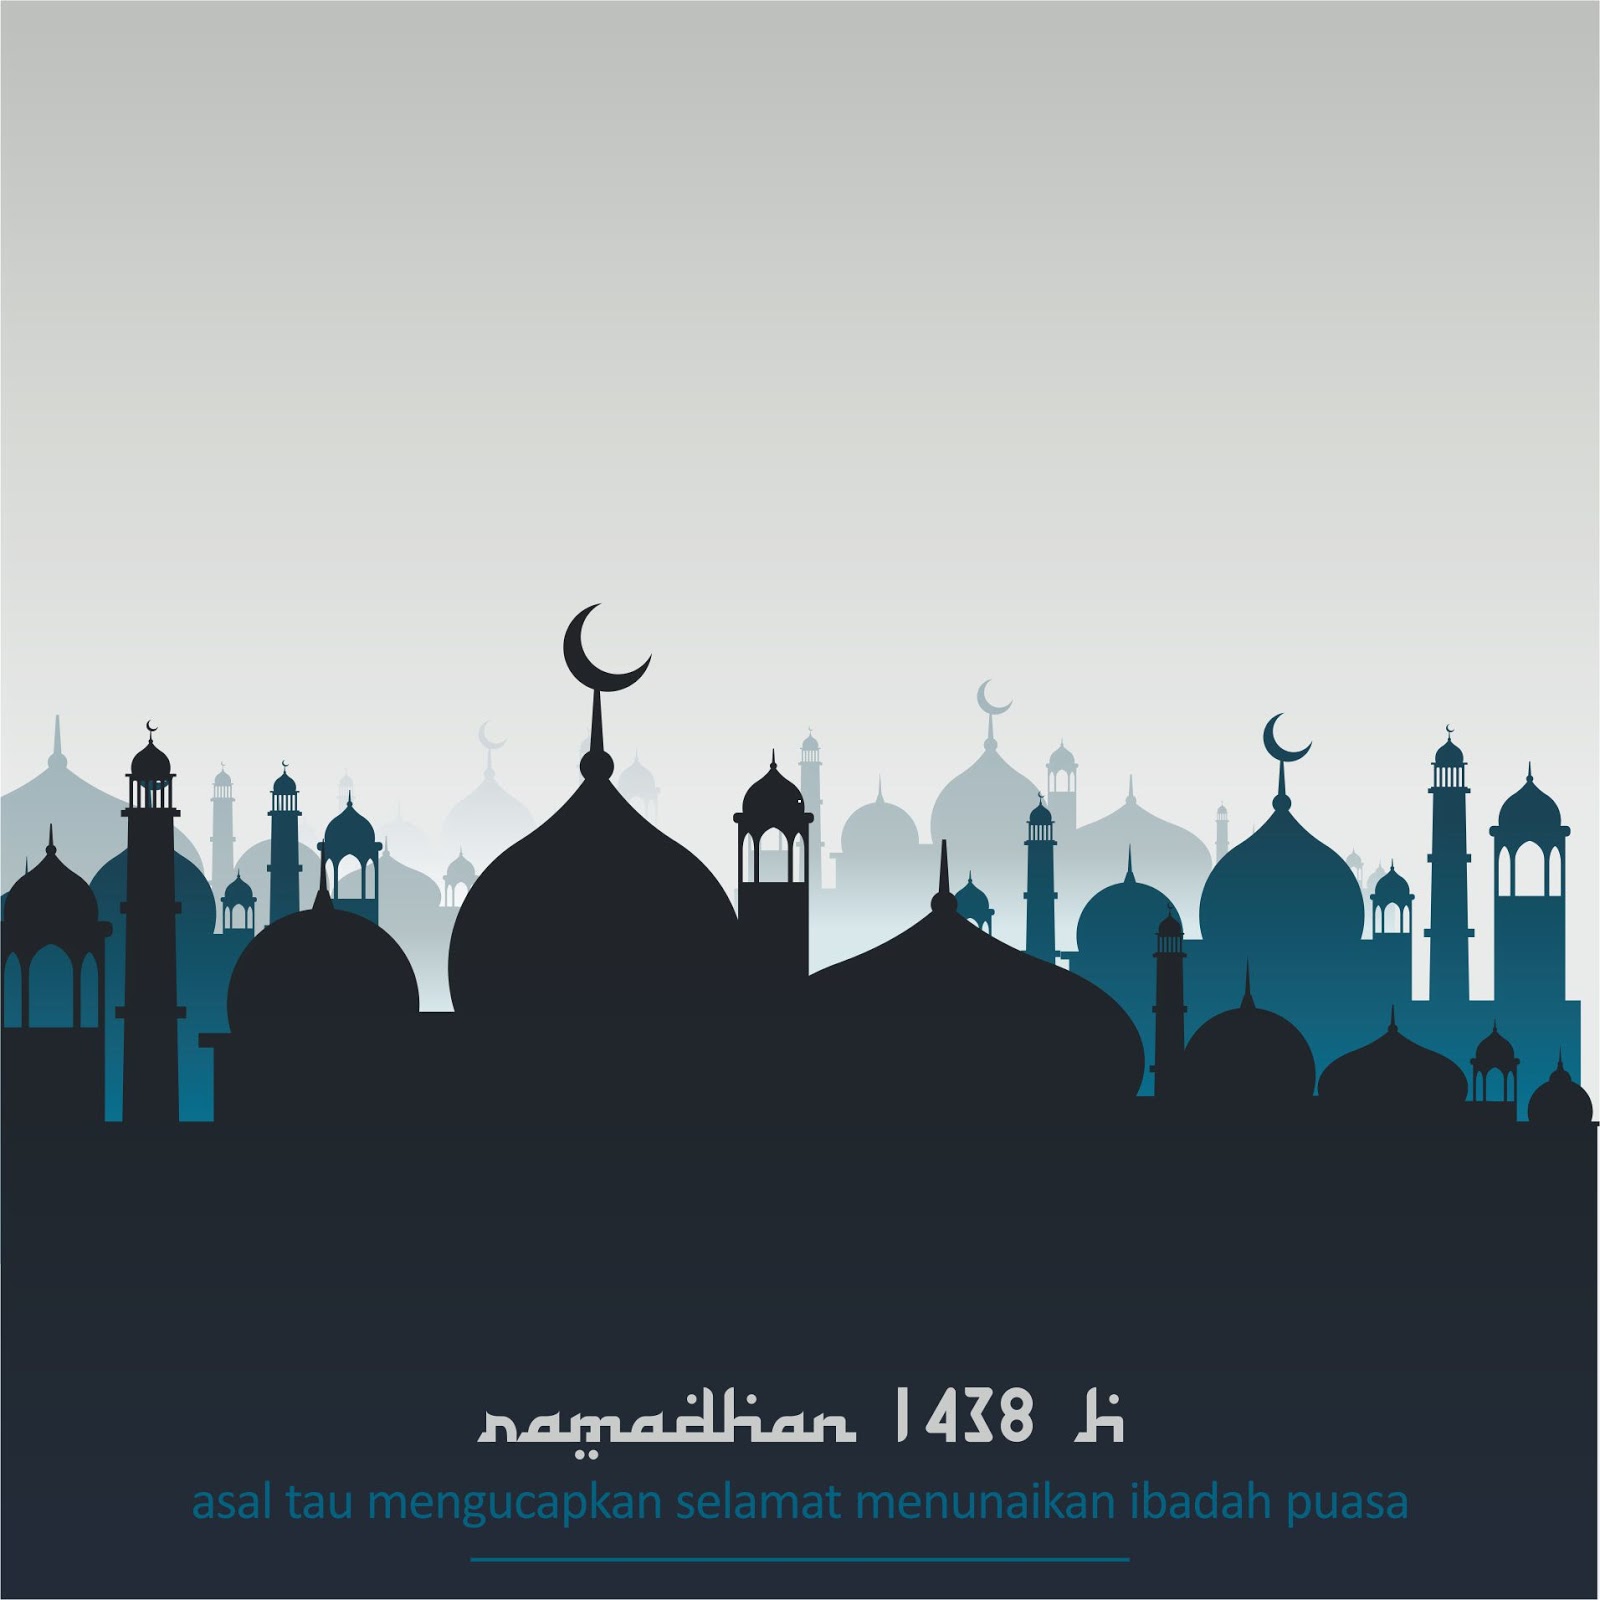 Download Desain Template Ramadhan - Asal Tau